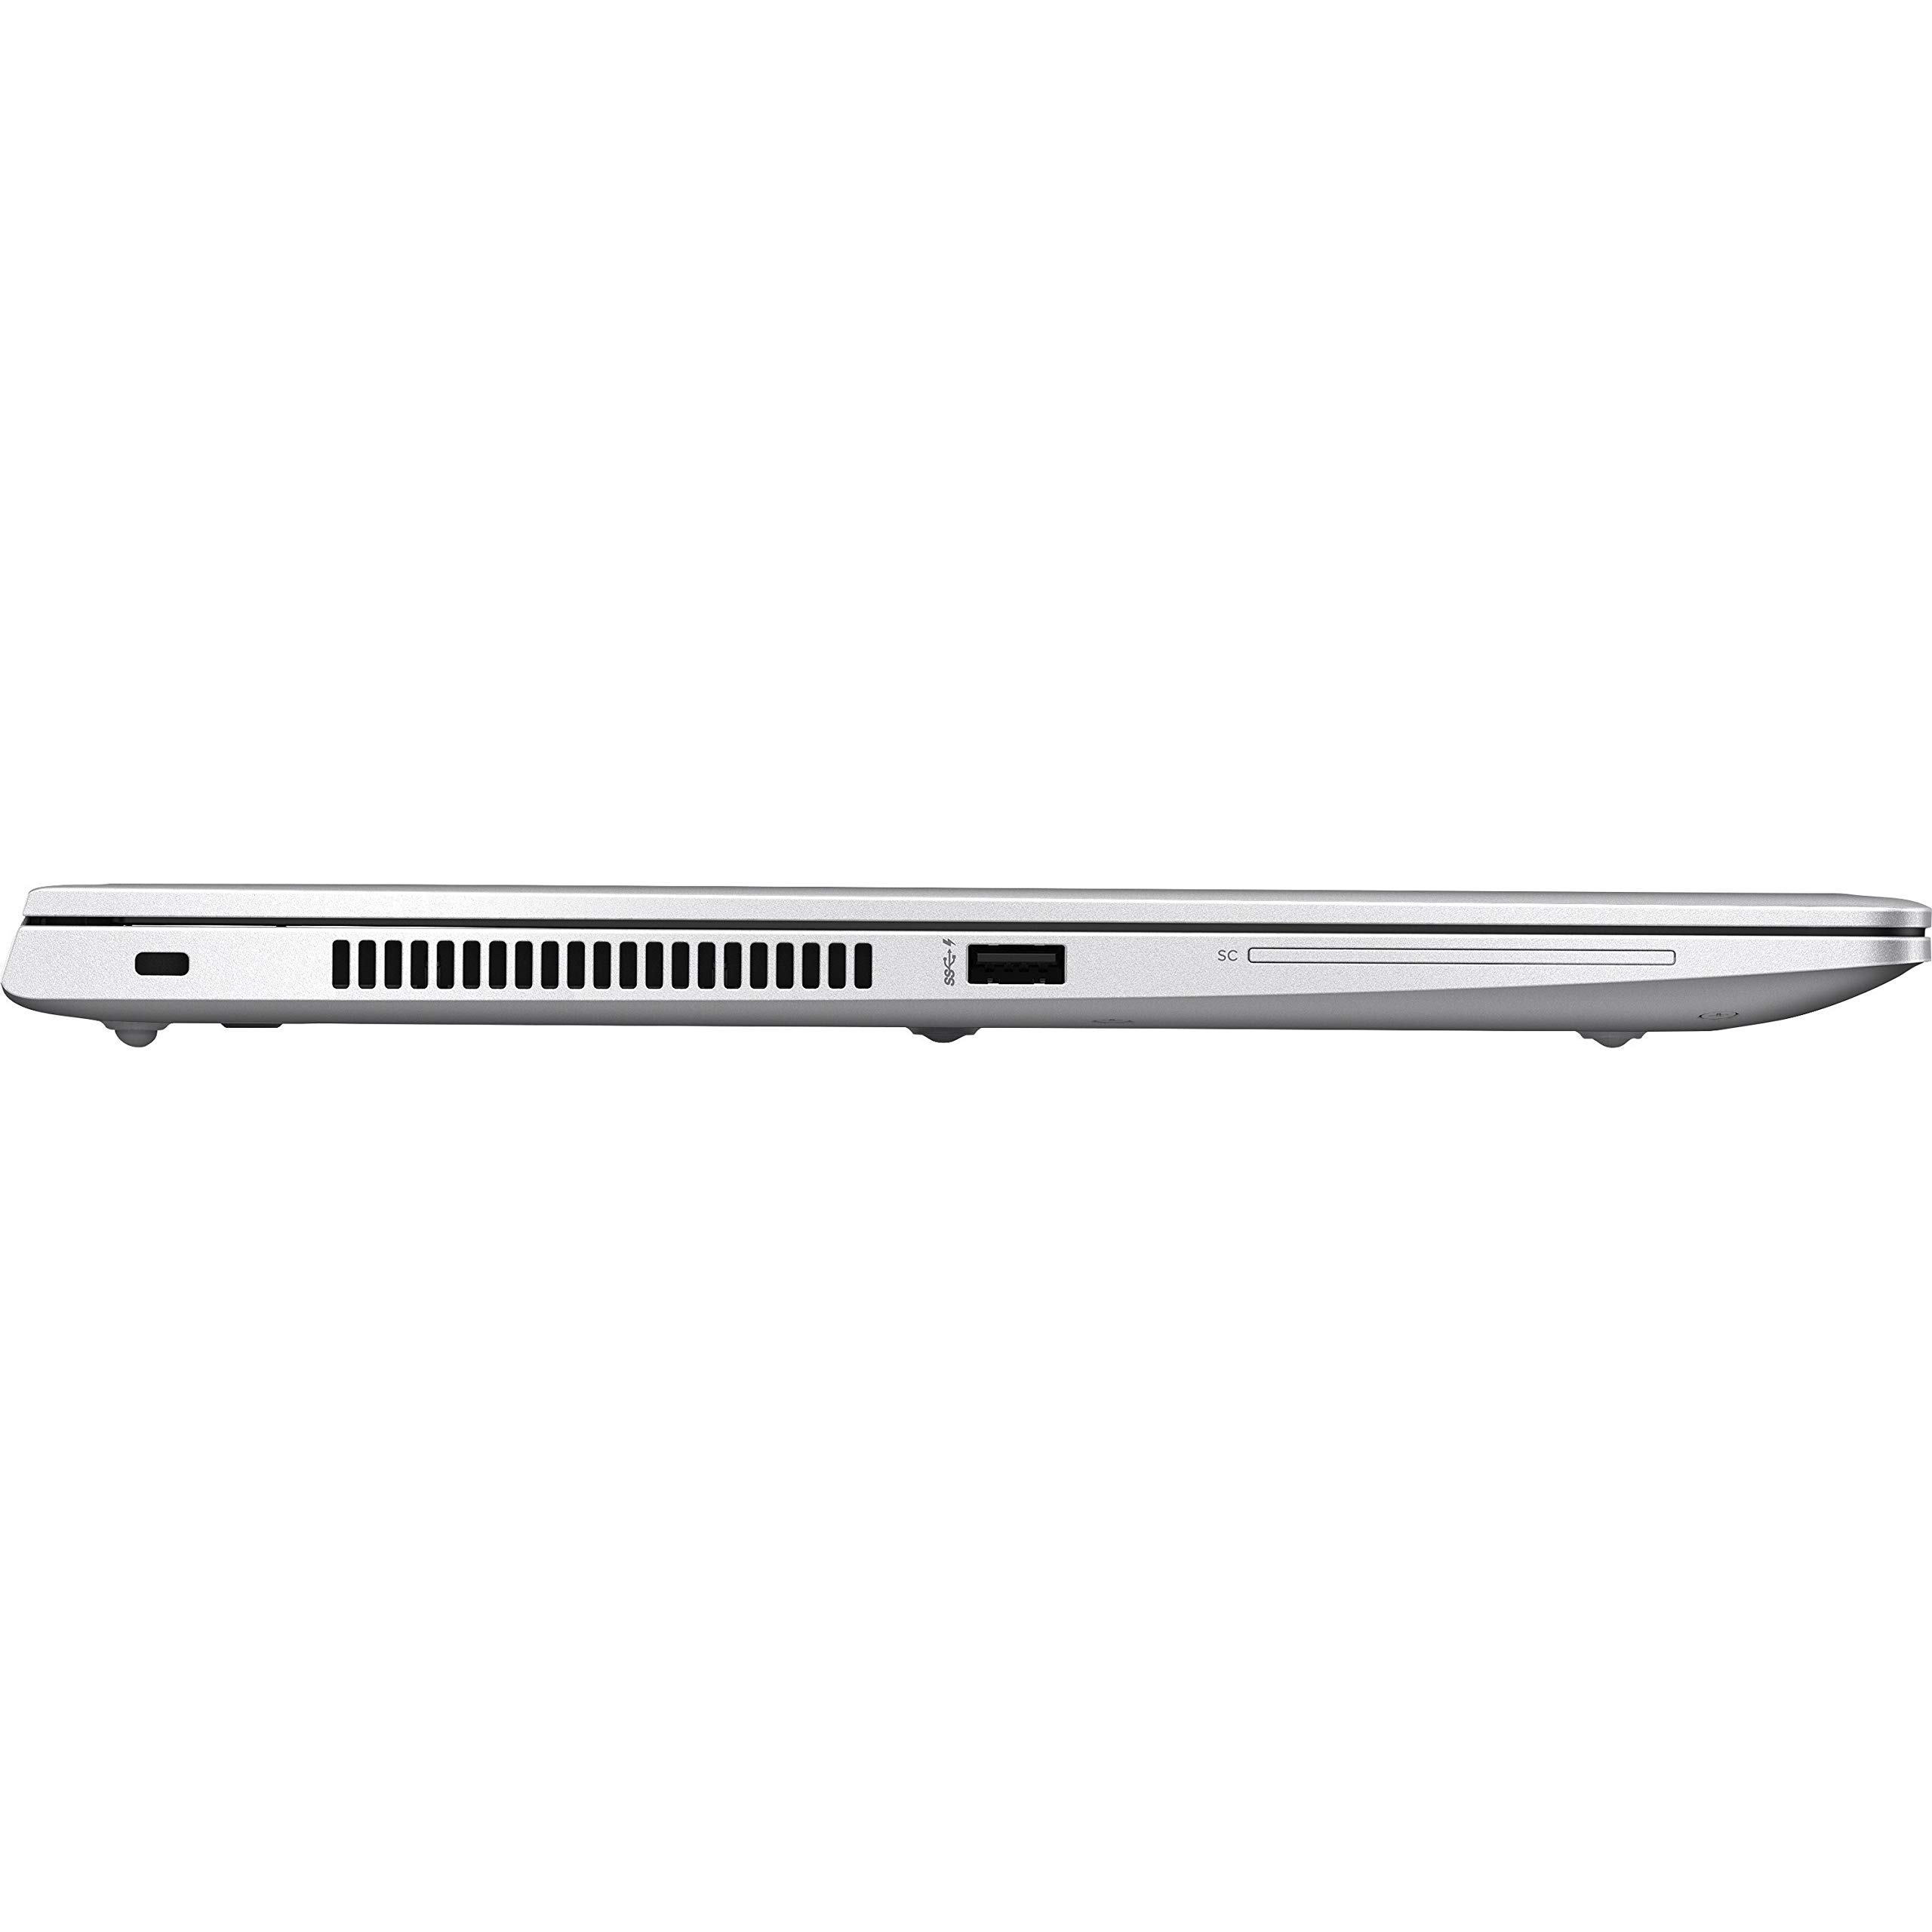 HP EliteBook 830 G6 13.3